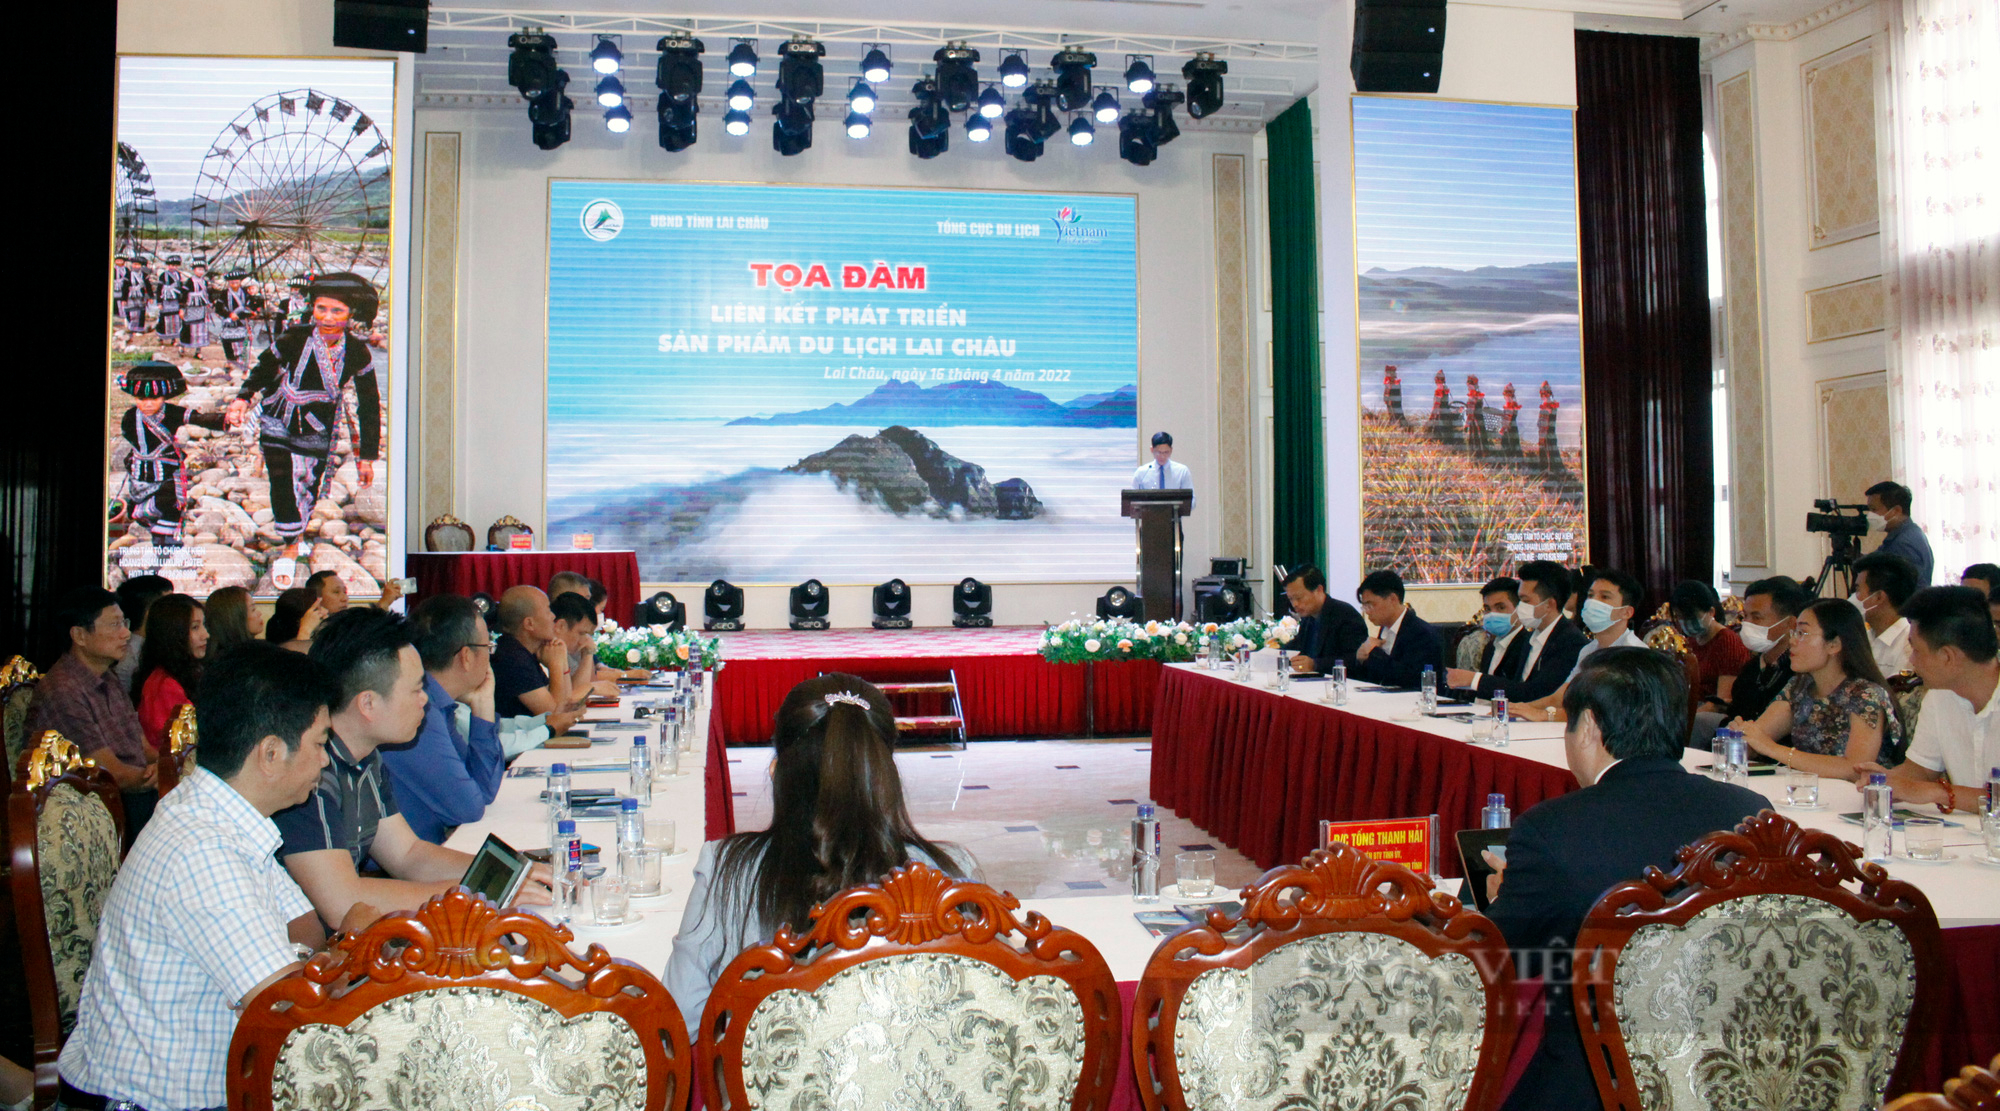 Liên kết phát triển sản phẩm du lịch Lai Châu - Ảnh 1.